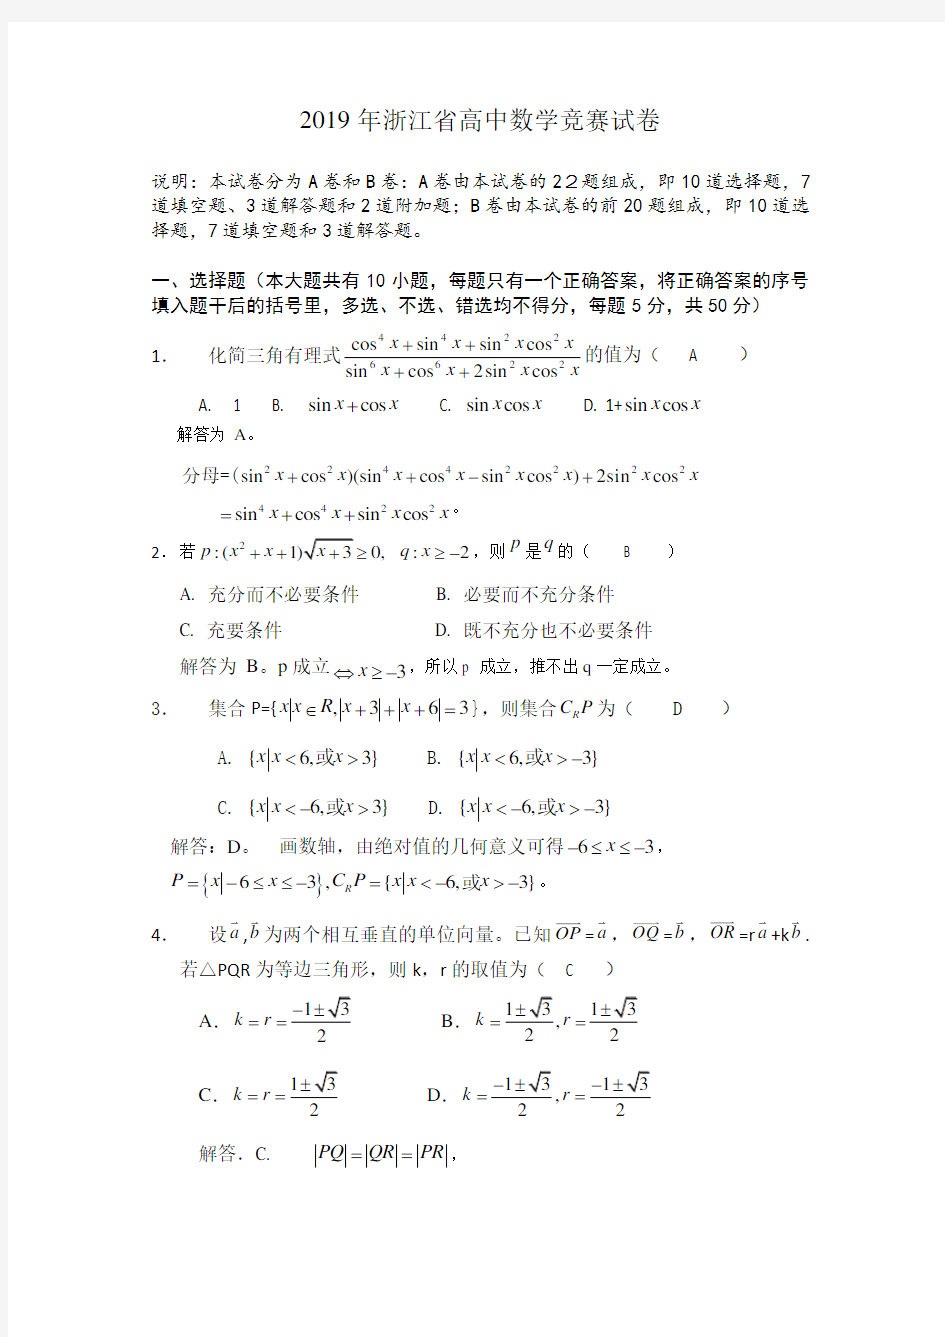 2019年浙江省高中数学竞赛试卷